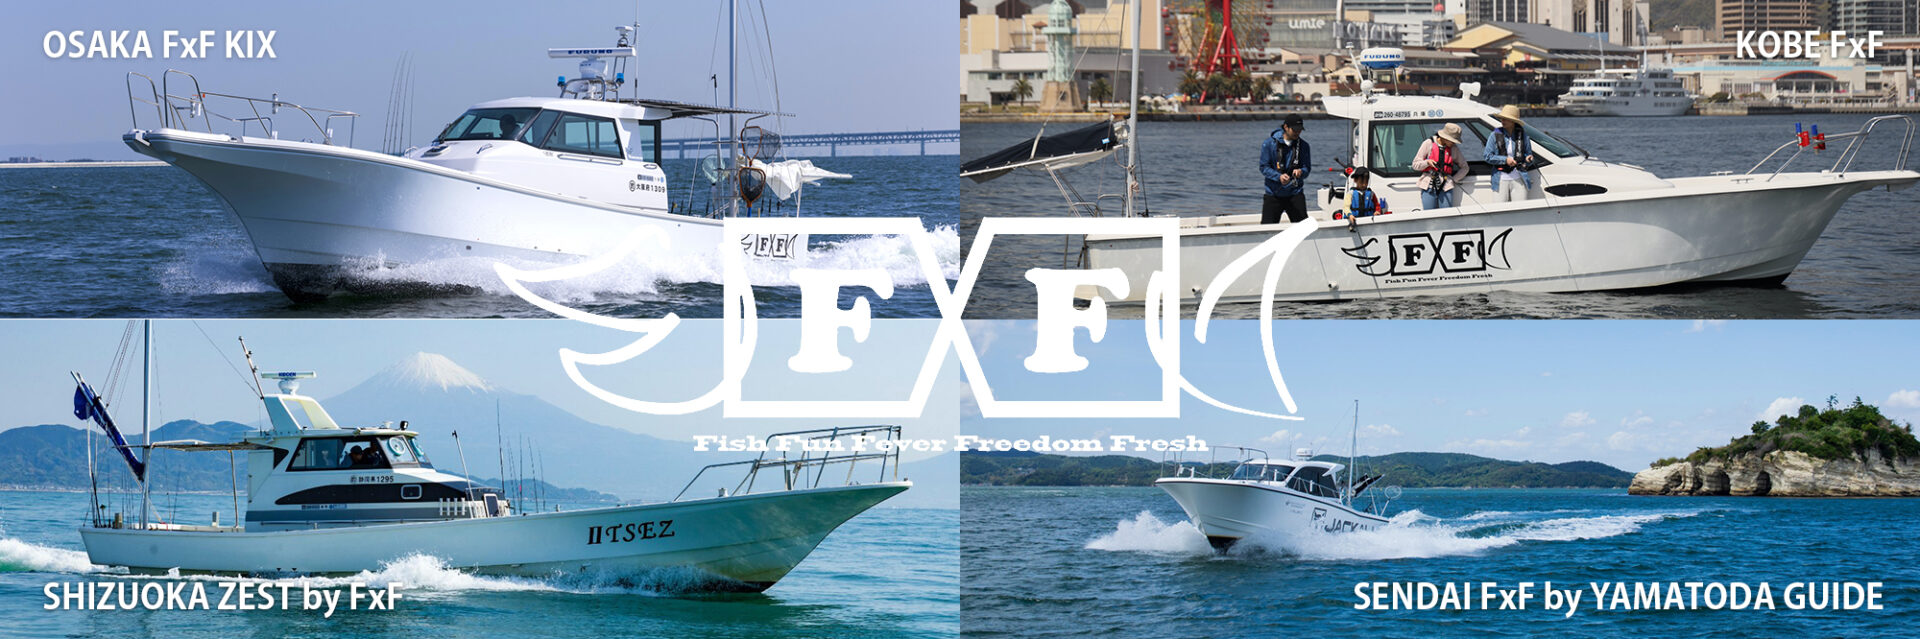 釣りと海遊びの楽しさを提案する FxF エフ・バイ・エフ 海釣り遊漁船